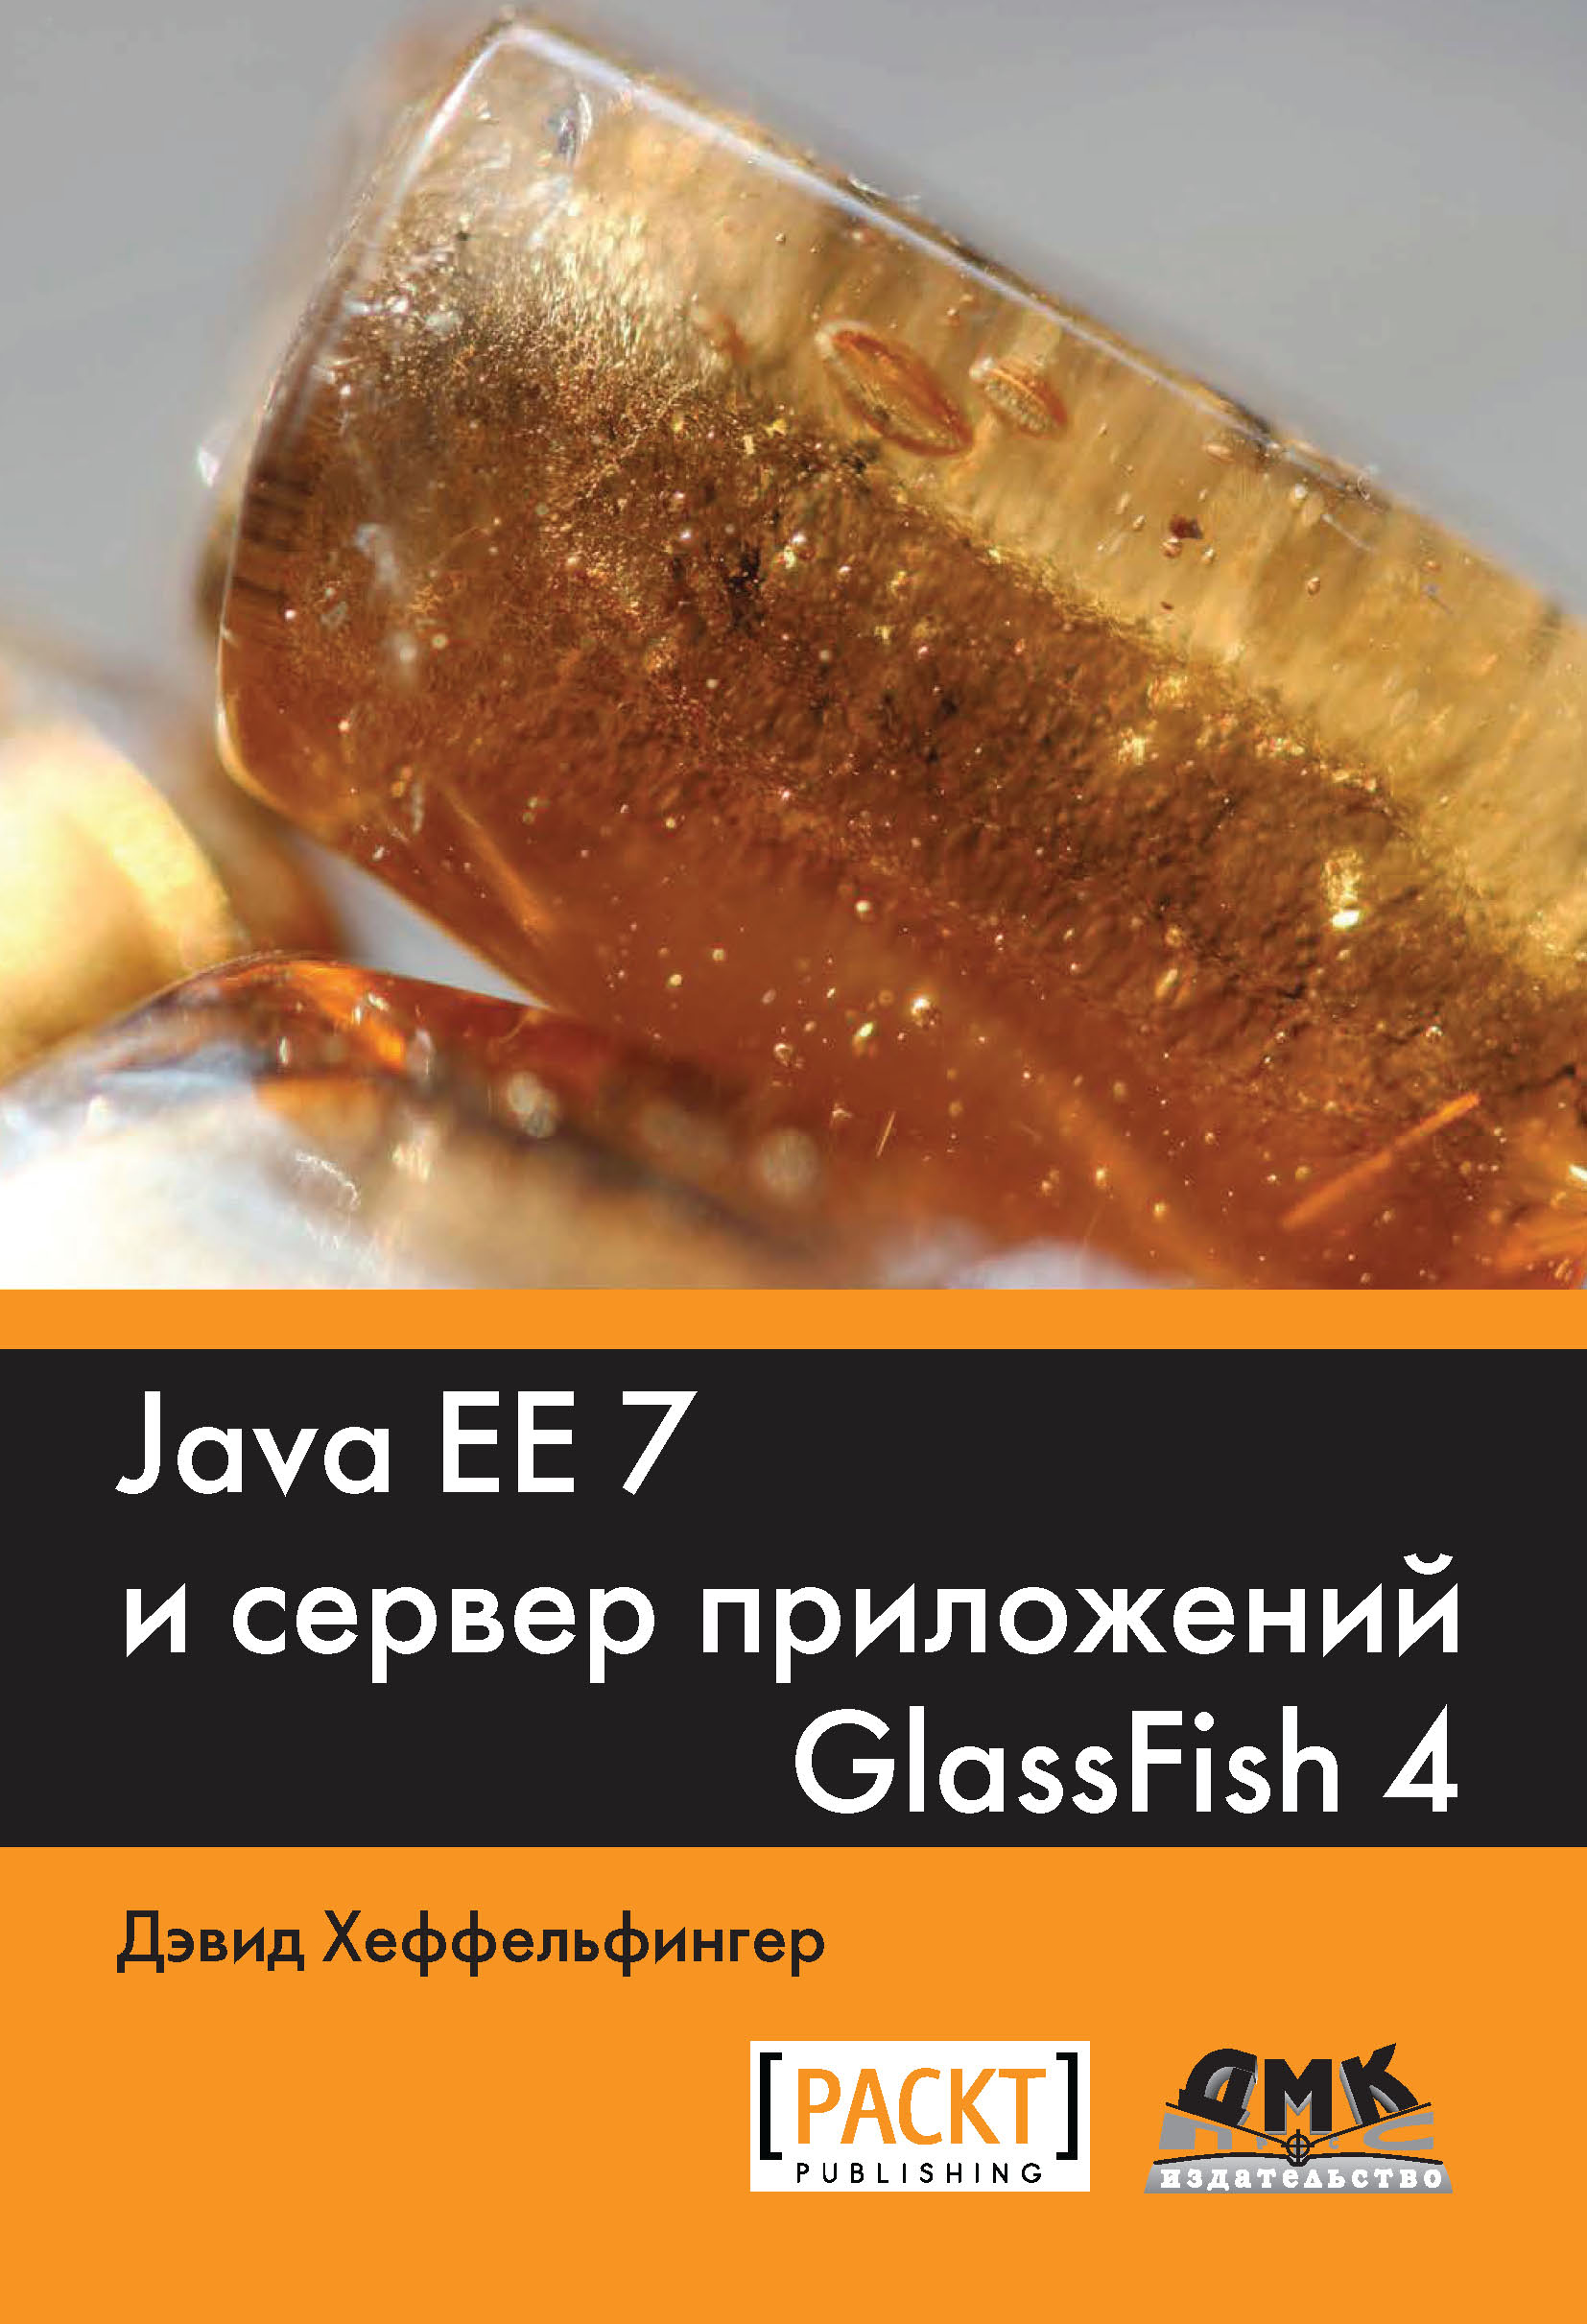 Книга  Java EE 7 и сервер приложений GlassFish4 созданная Дэвид Хеффельфингер, Александр Киселев может относится к жанру зарубежная компьютерная литература, зарубежная справочная литература, программирование, руководства. Стоимость электронной книги Java EE 7 и сервер приложений GlassFish4 с идентификатором 48411095 составляет 590.00 руб.